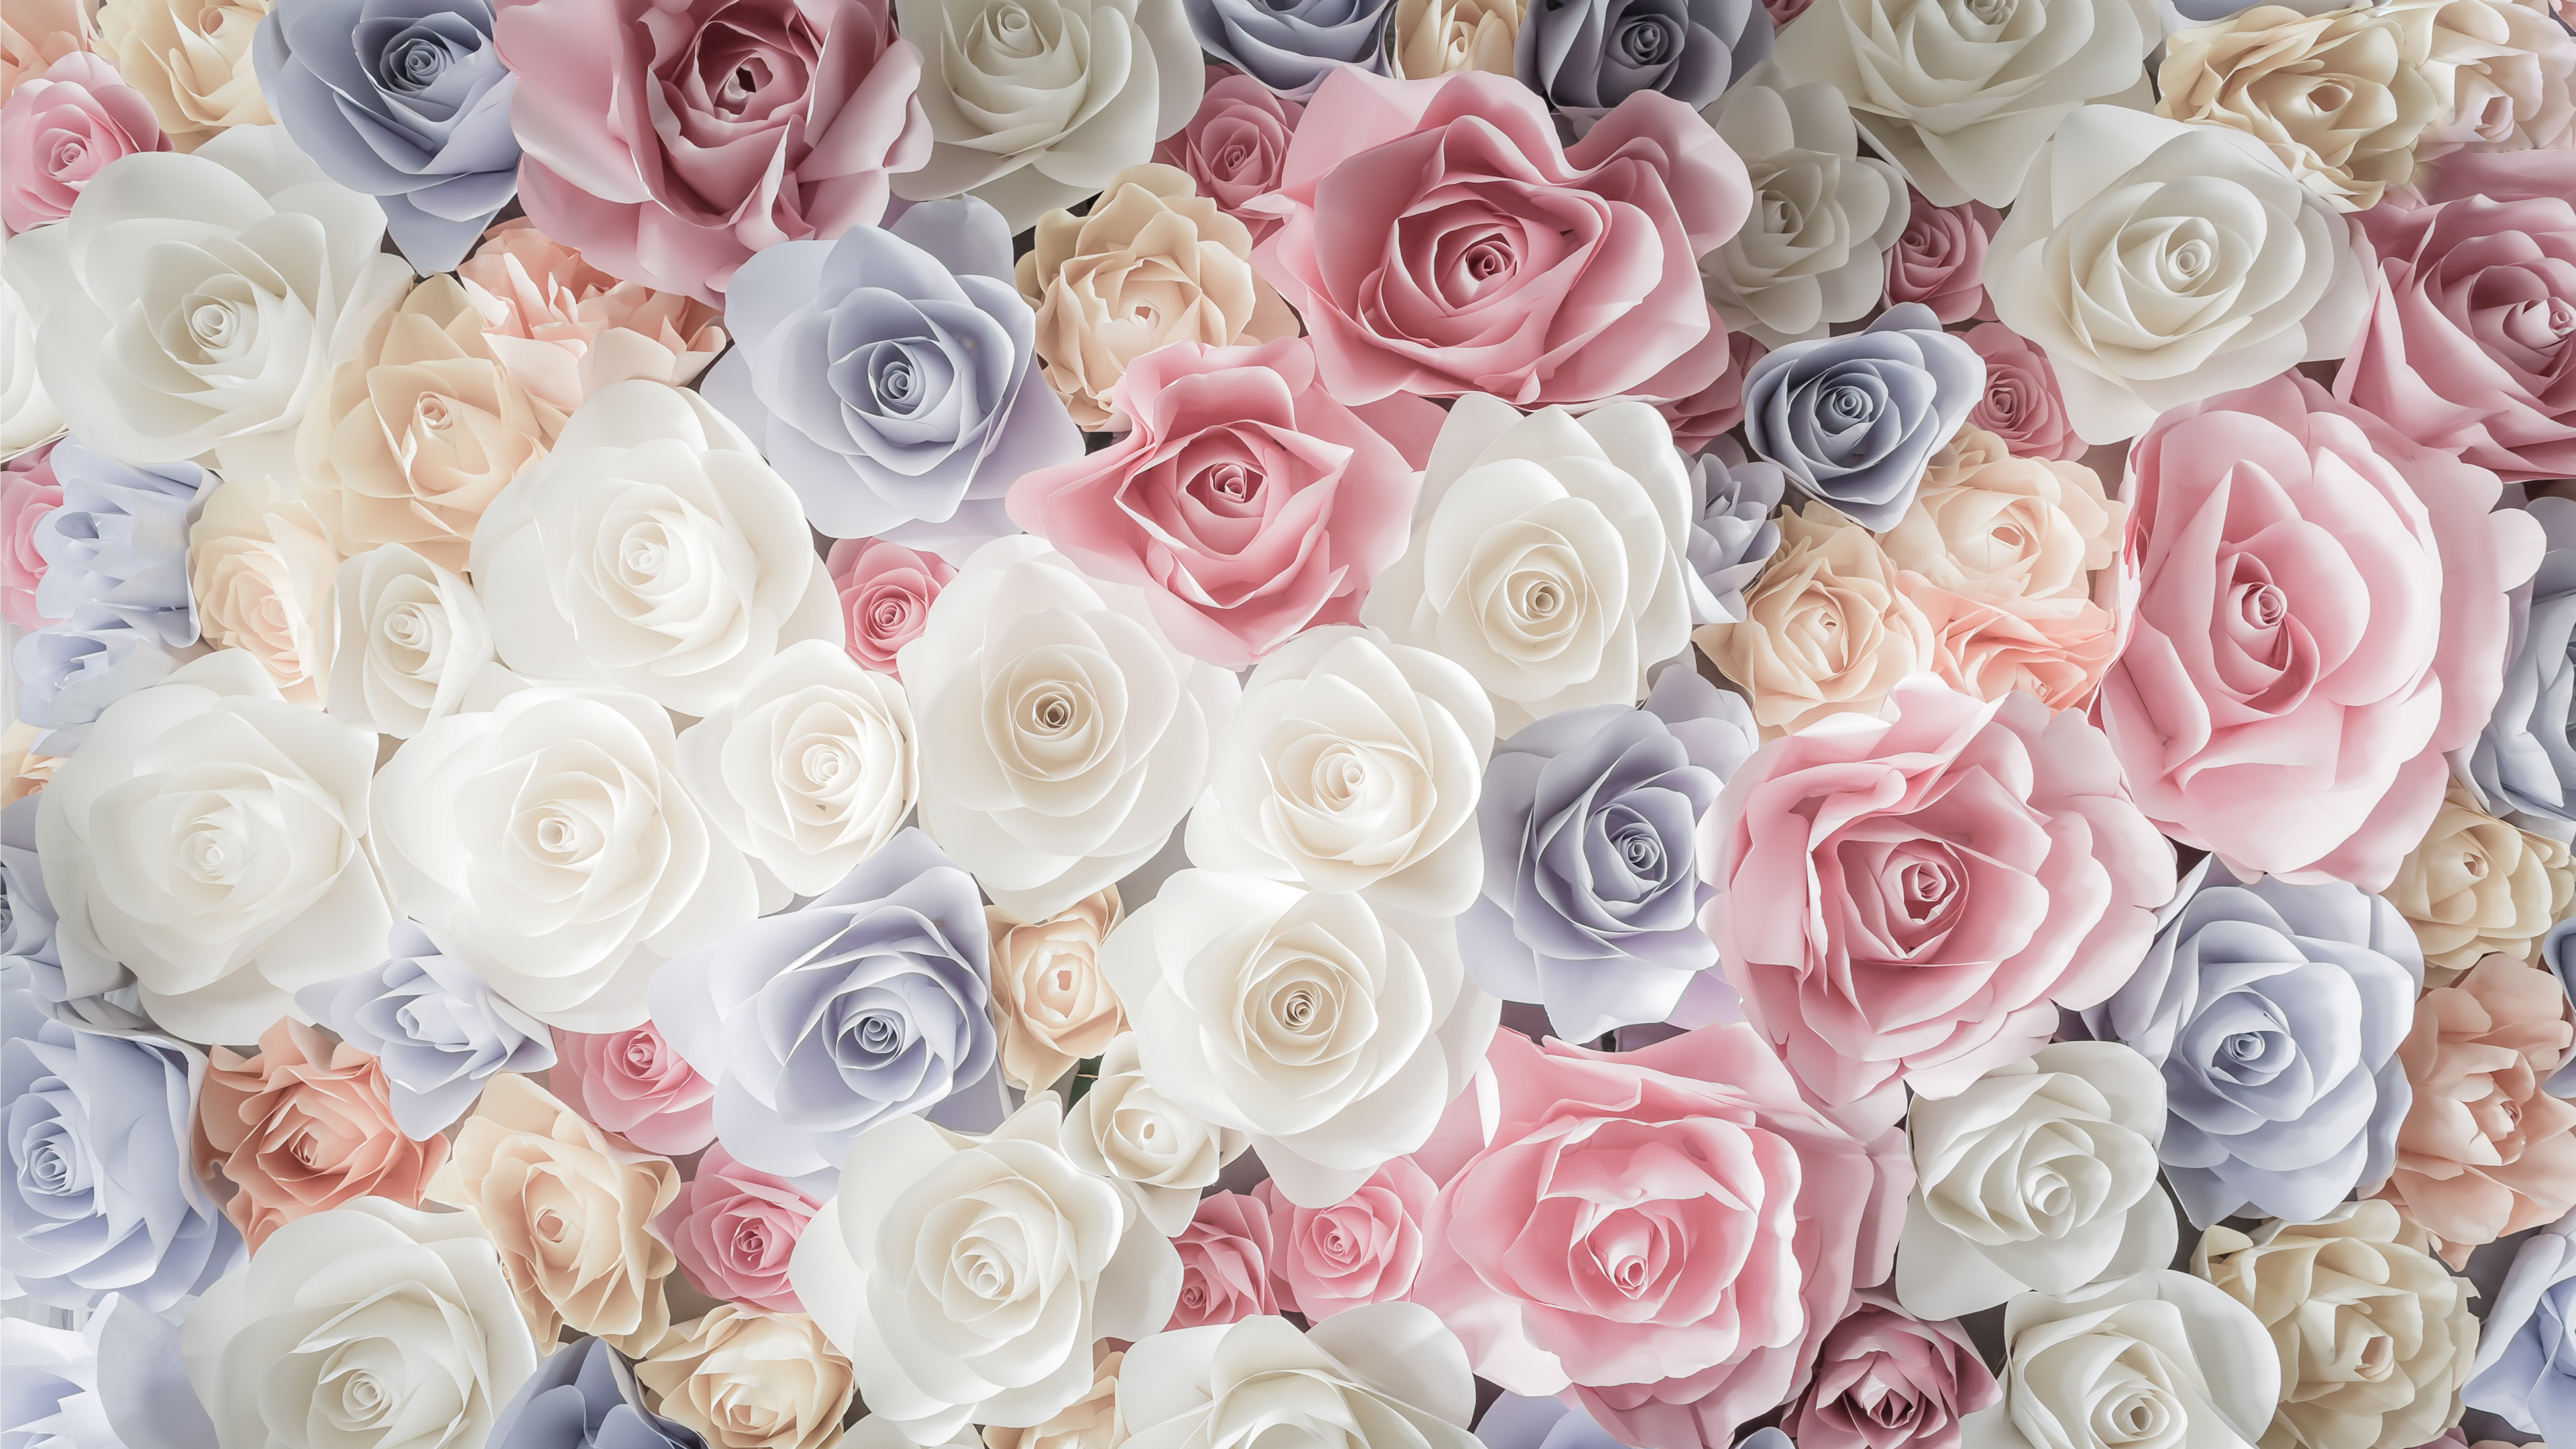 玫瑰花园, 切花, 粉红色, 玫瑰家庭, 花卉设计 壁纸 3840x2160 允许